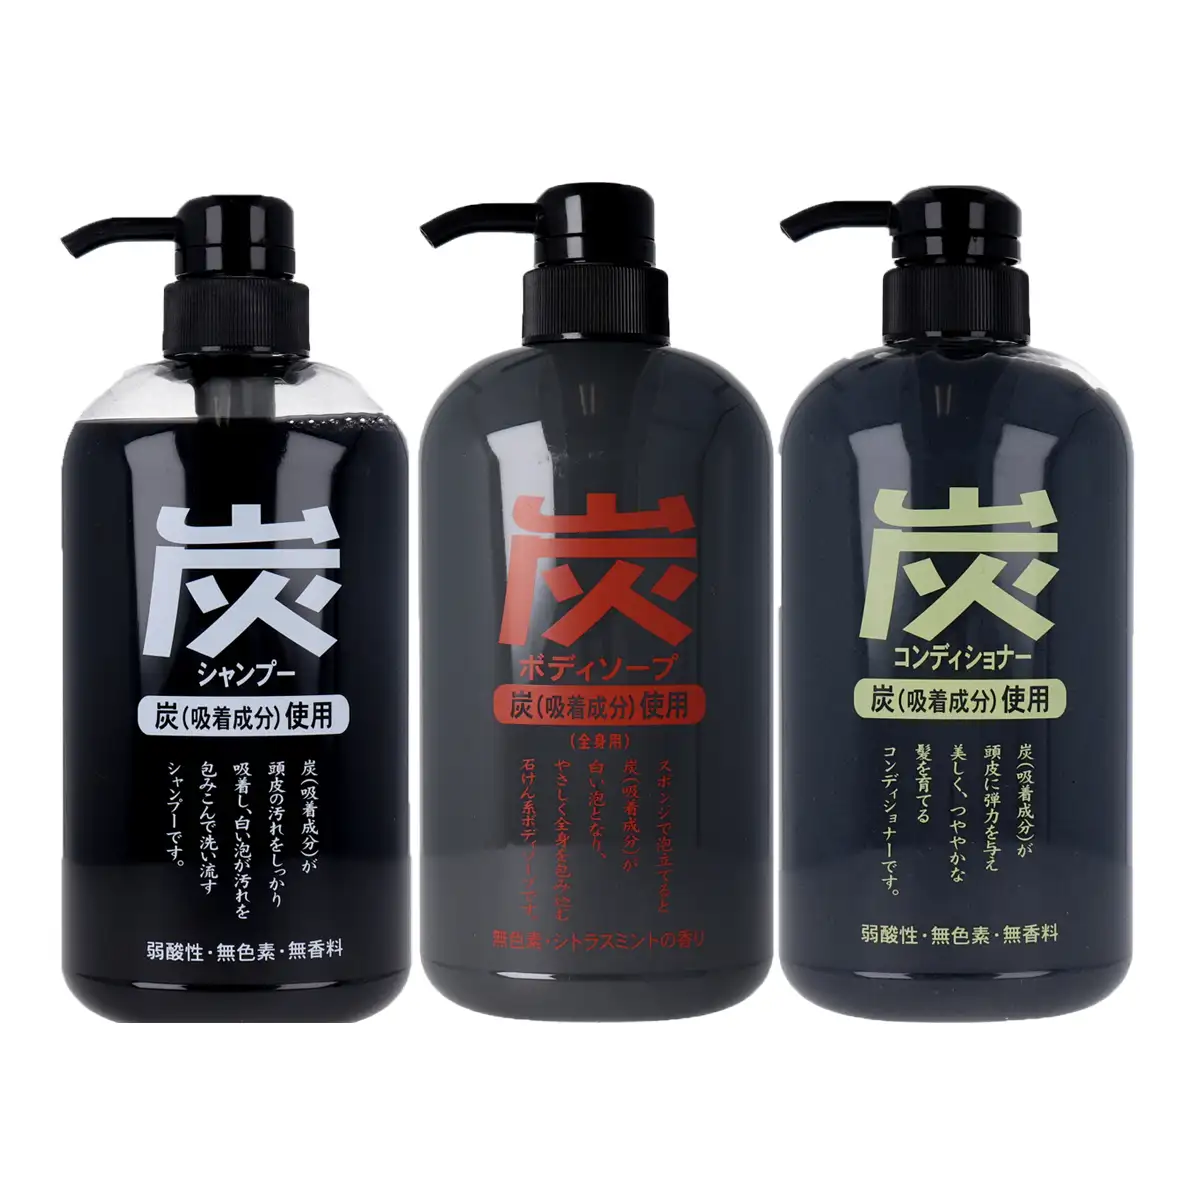 Good quality Charcoal liquid body soap 600mL